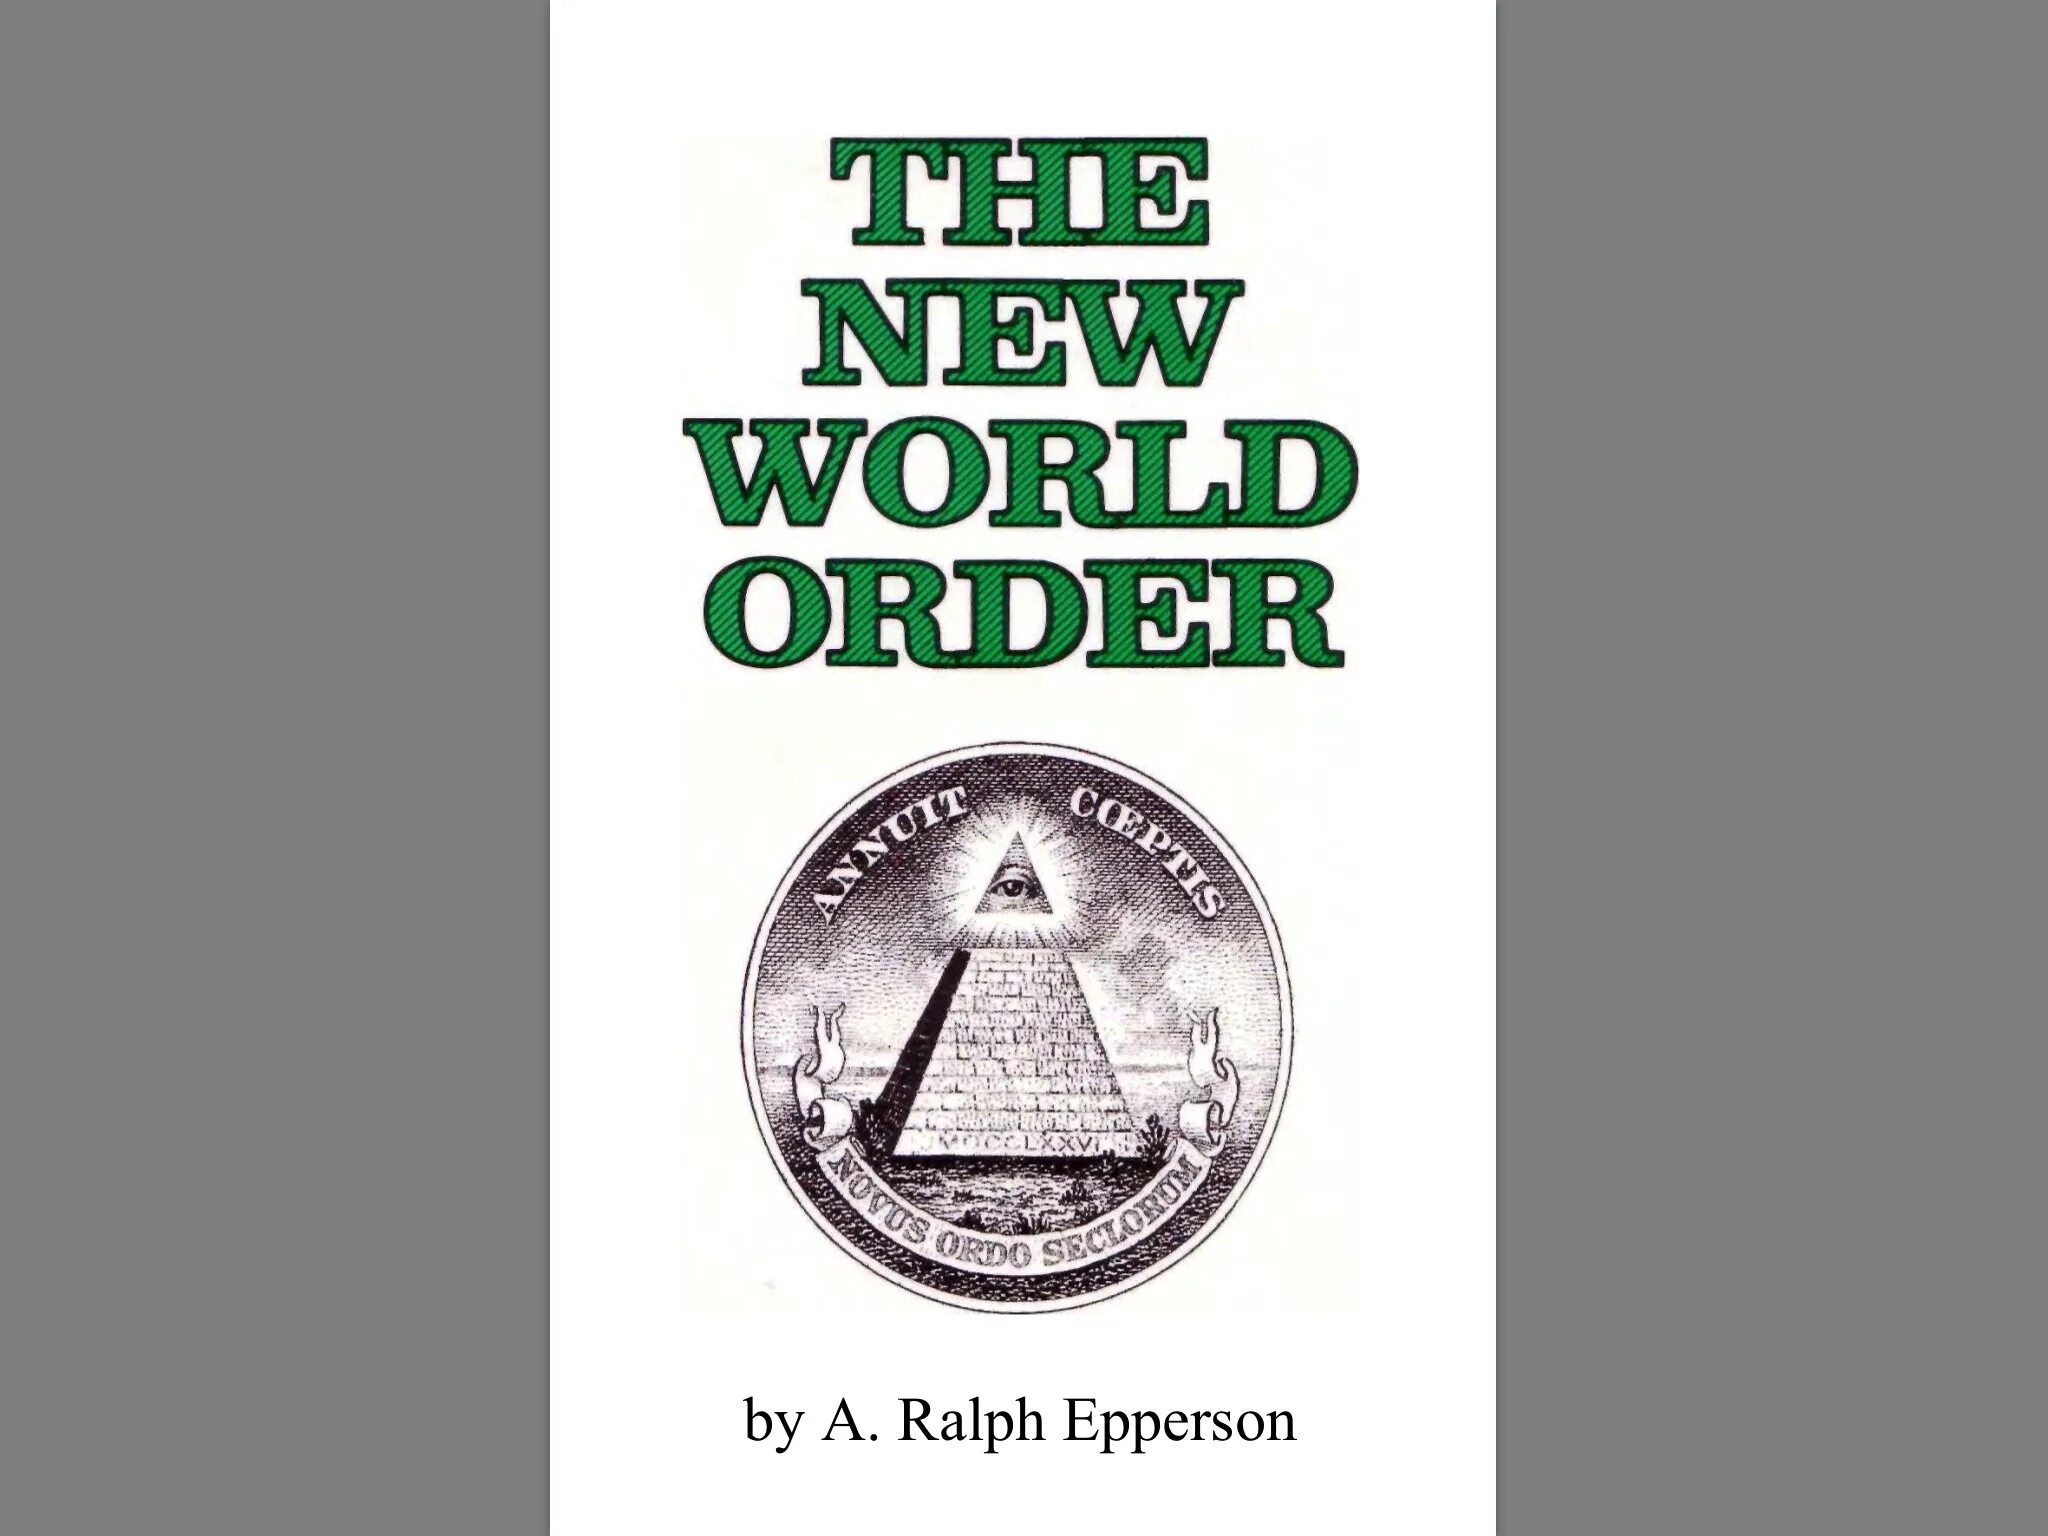 World order is. Ральф Эпперсон новый мировой порядок. The New World order книга. Ральф Эпперсон Невидимая рука. Новый мировой порядок книга.